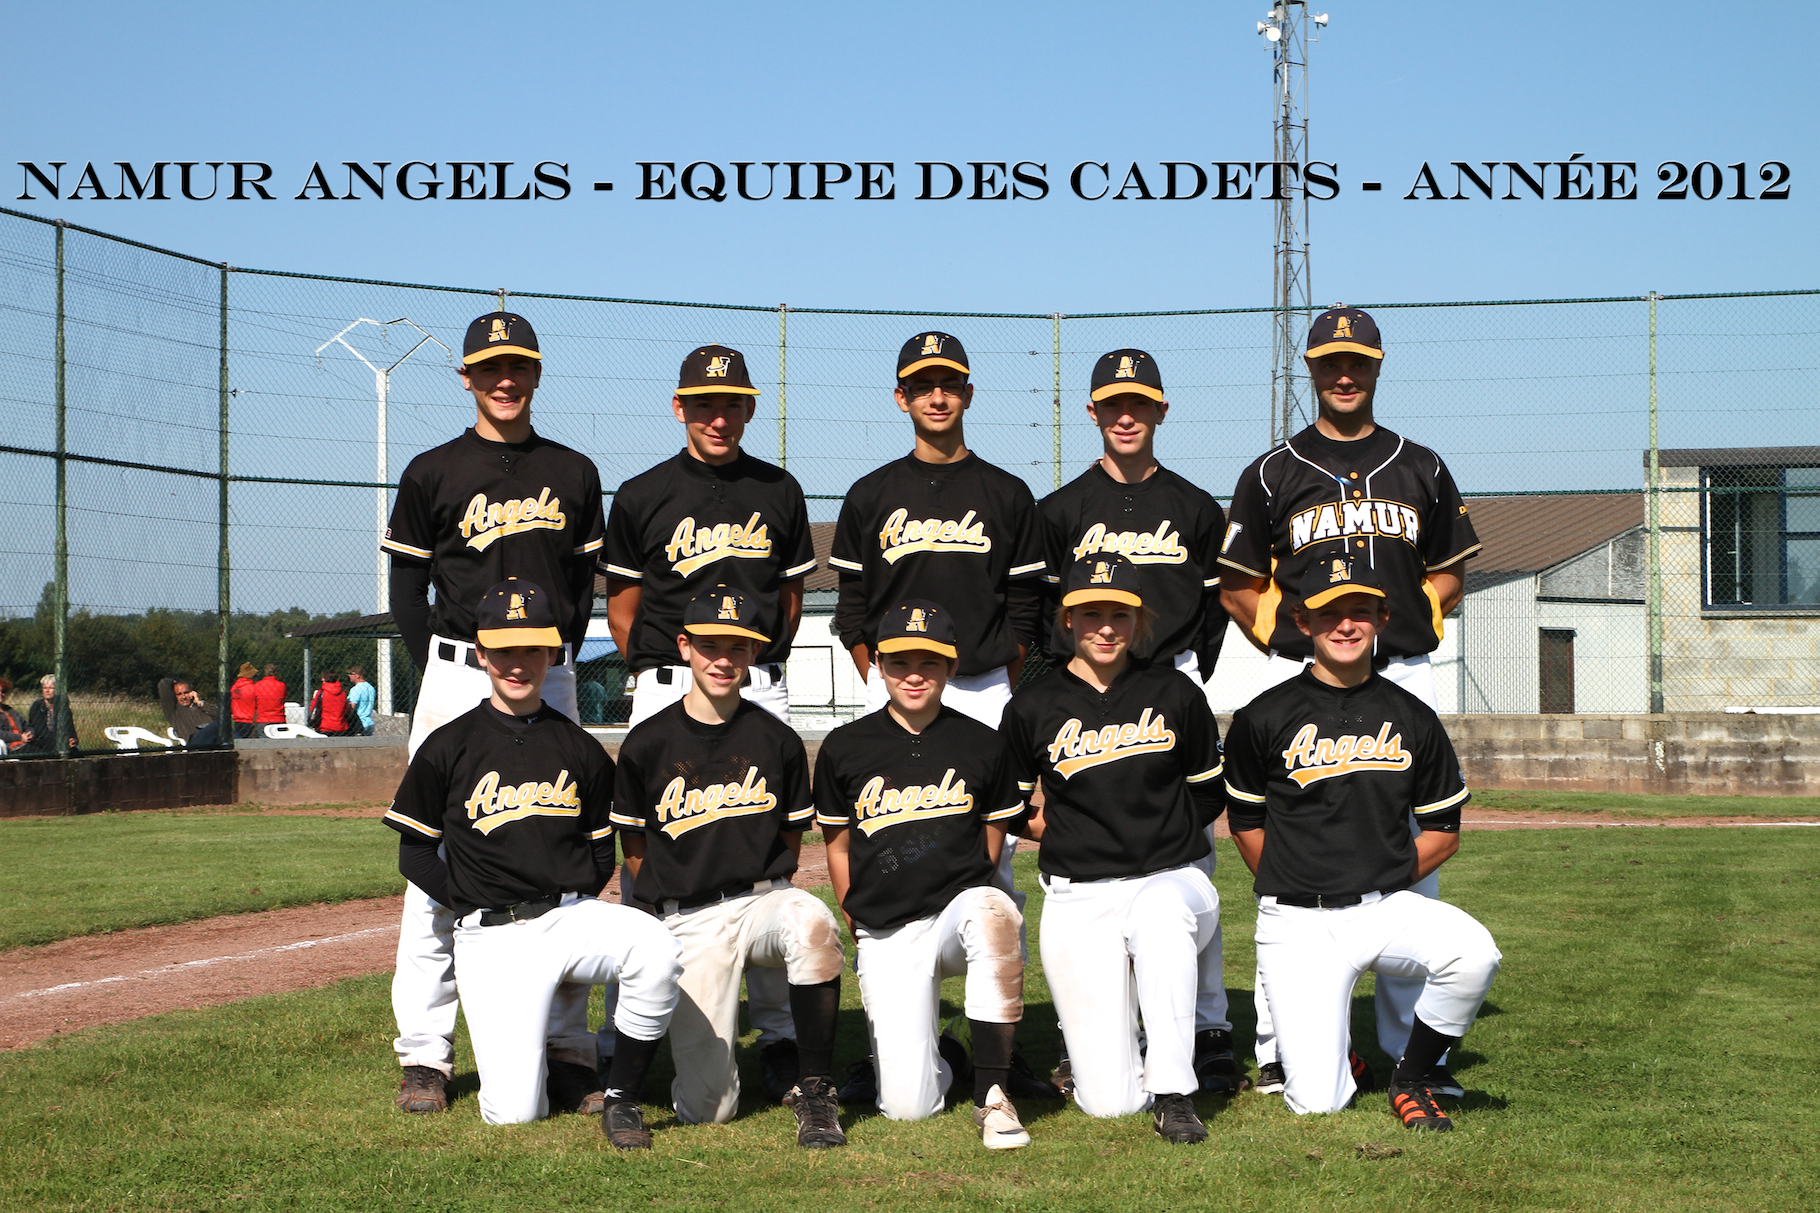 L'équipe de Cadets des Namur Angels